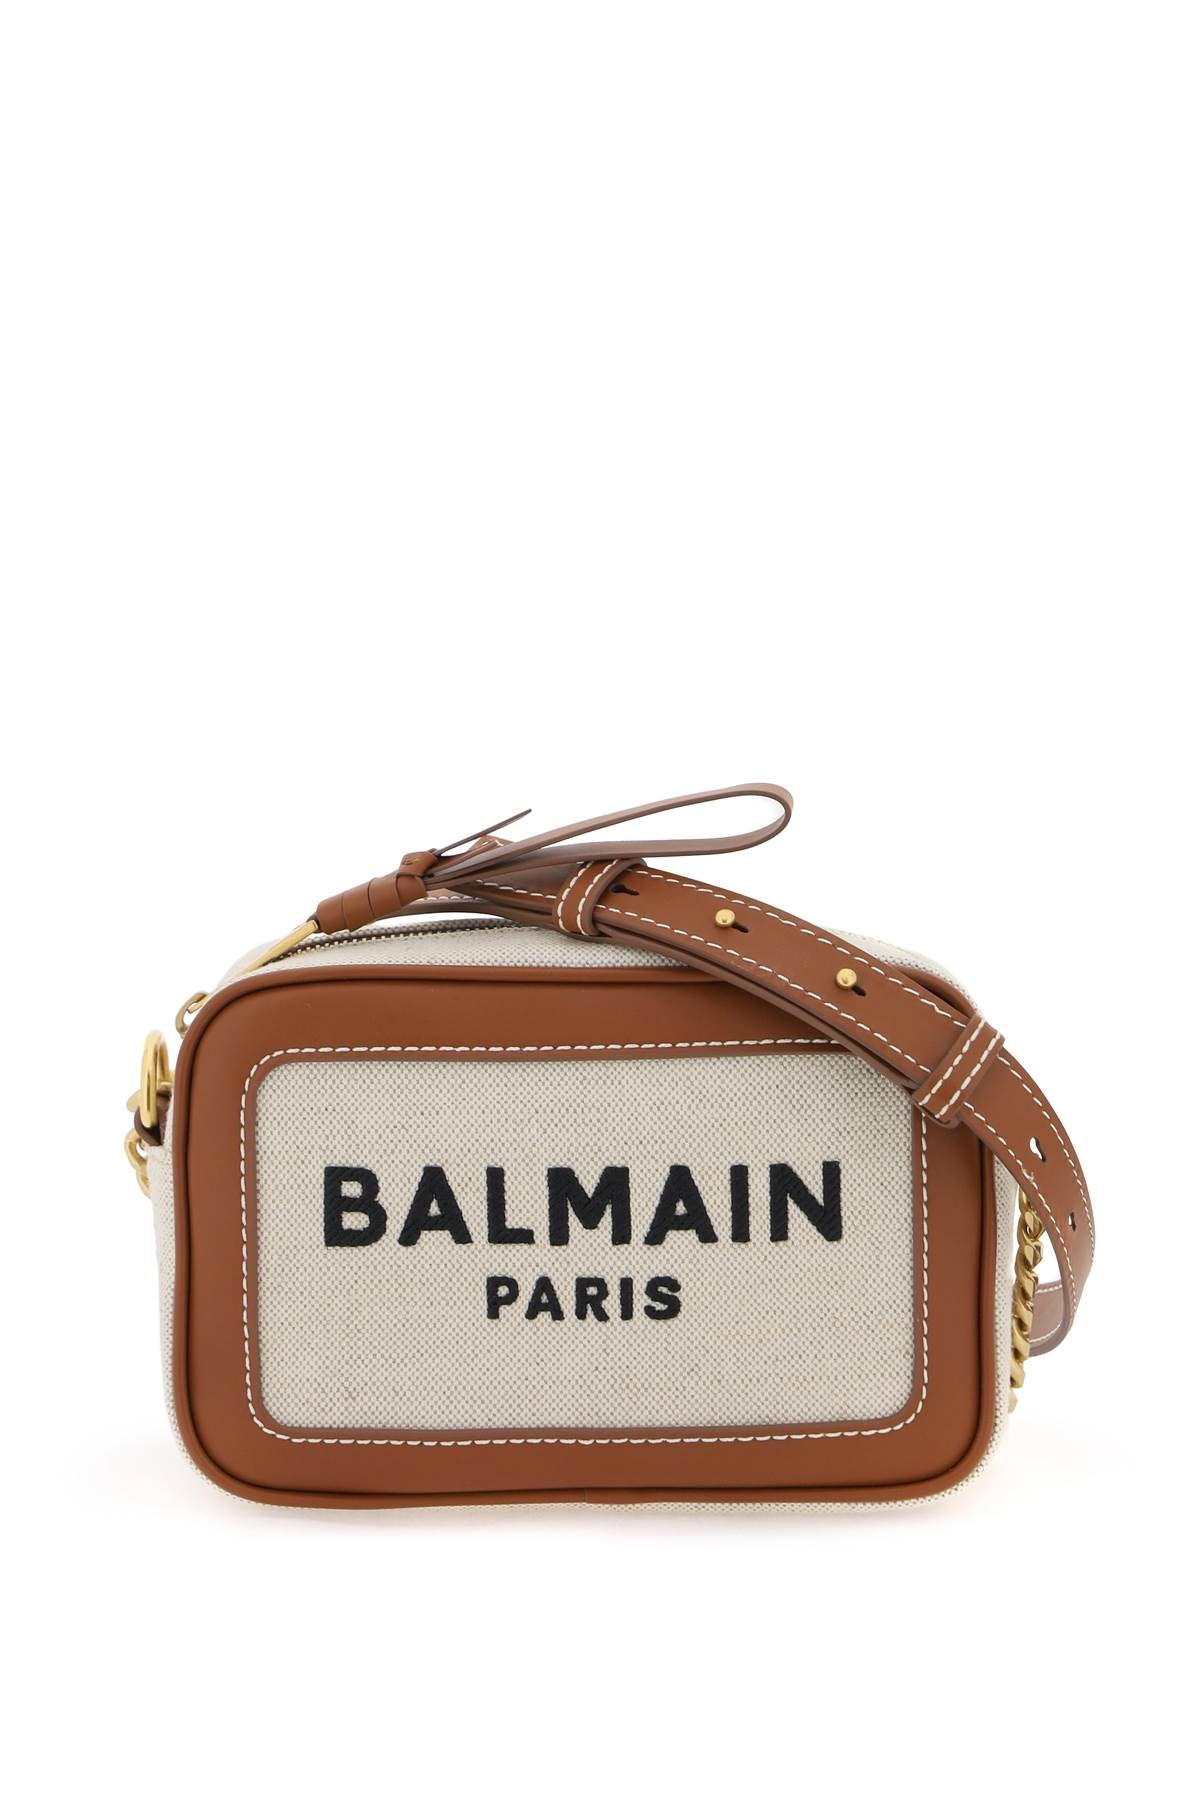 Balmain B-Army Crossbody Bag-Balmain-Urbanheer